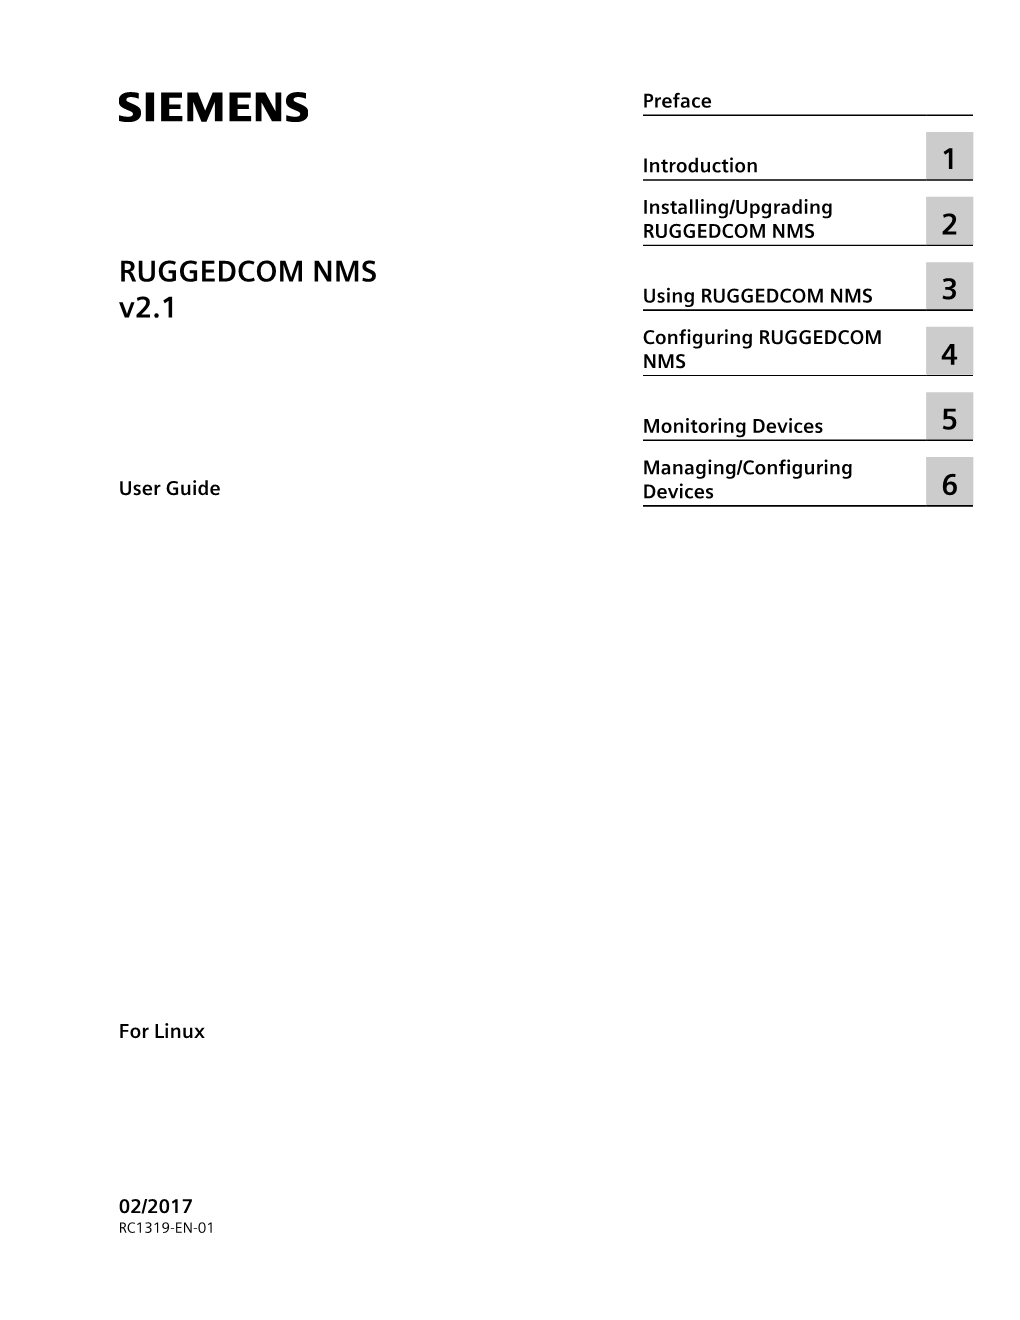 RUGGEDCOM NMS V2.1, Siemens's Network Management System for RUGGEDCOM Devices